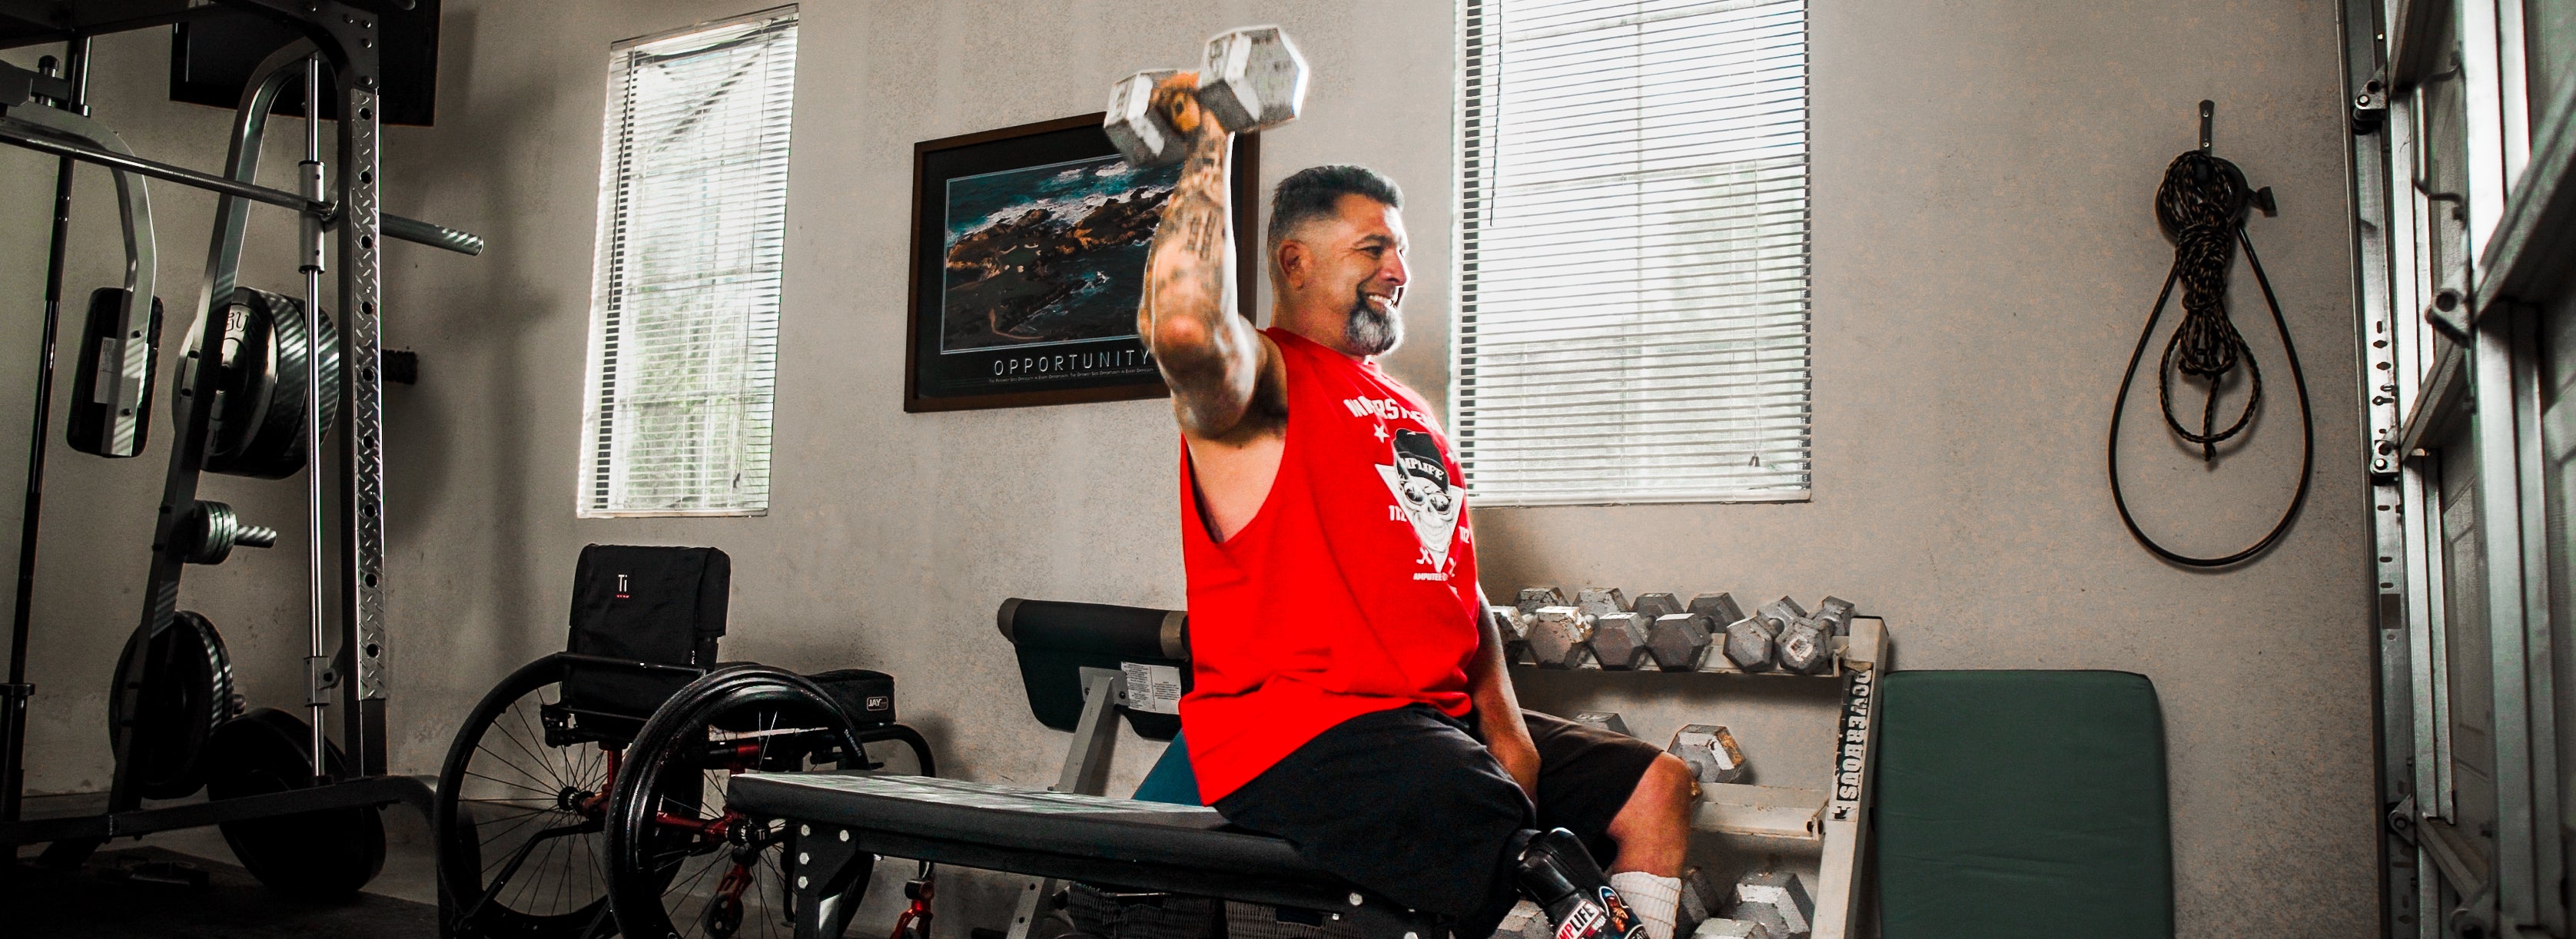 Amplife® Foundation & Amplife® Founder Abdul Nevarez shoulder pressing in his home gym